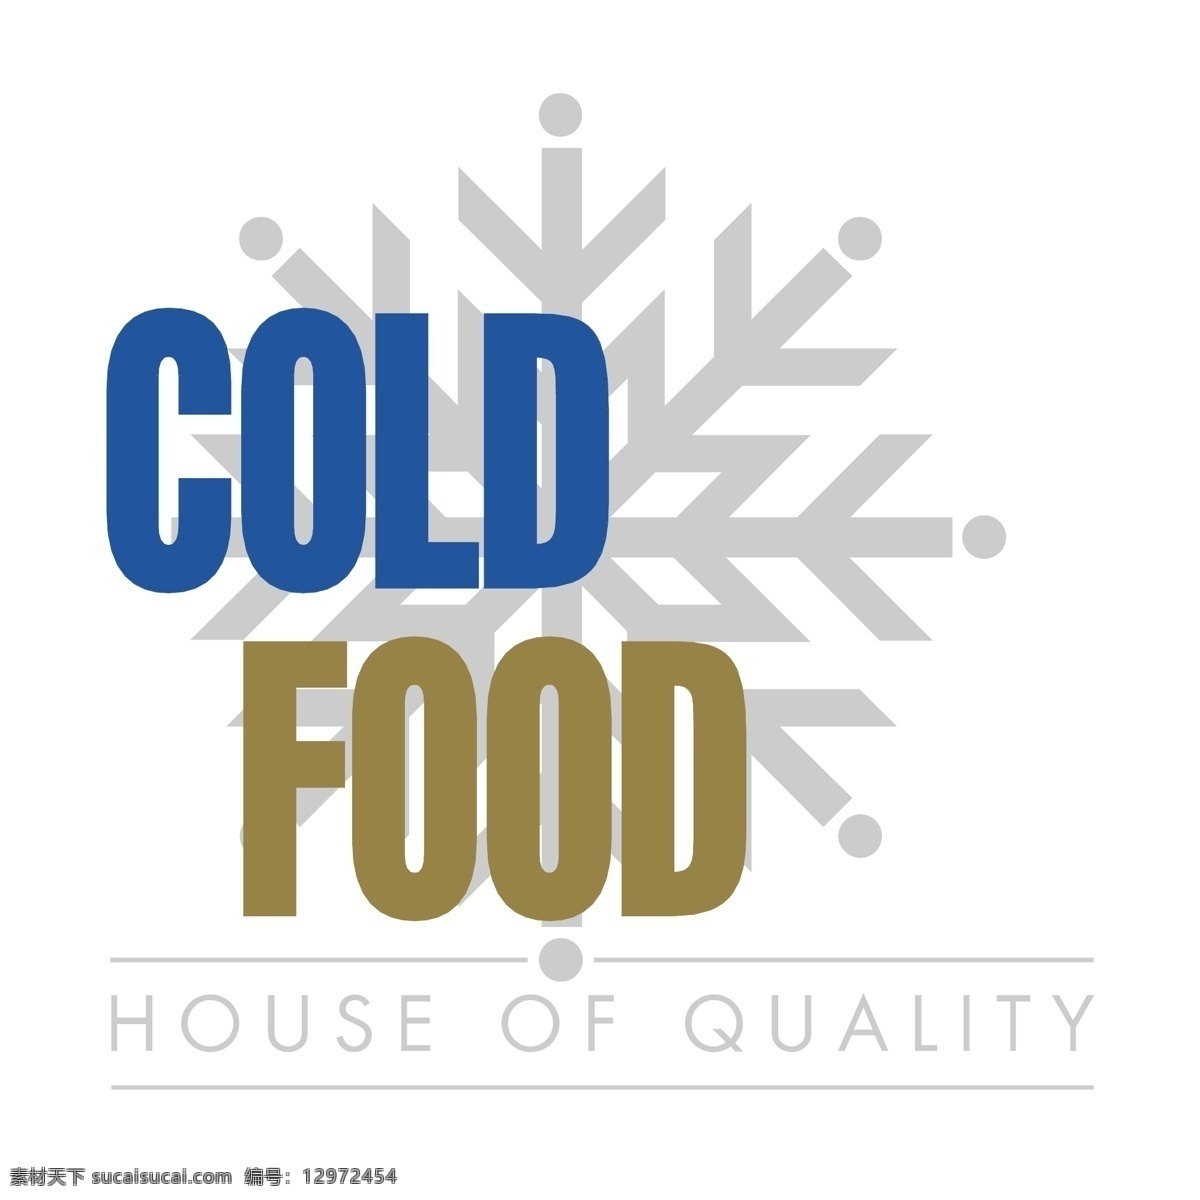 冷 食物 冷的食物 矢量冷的食物 热冷食品 冷热食物 冷热食物载体 食品 背景 下 冷食品向量 向量 矢量冷热食物 矢量 快餐 禁食生冷食物 矢量图 建筑家居